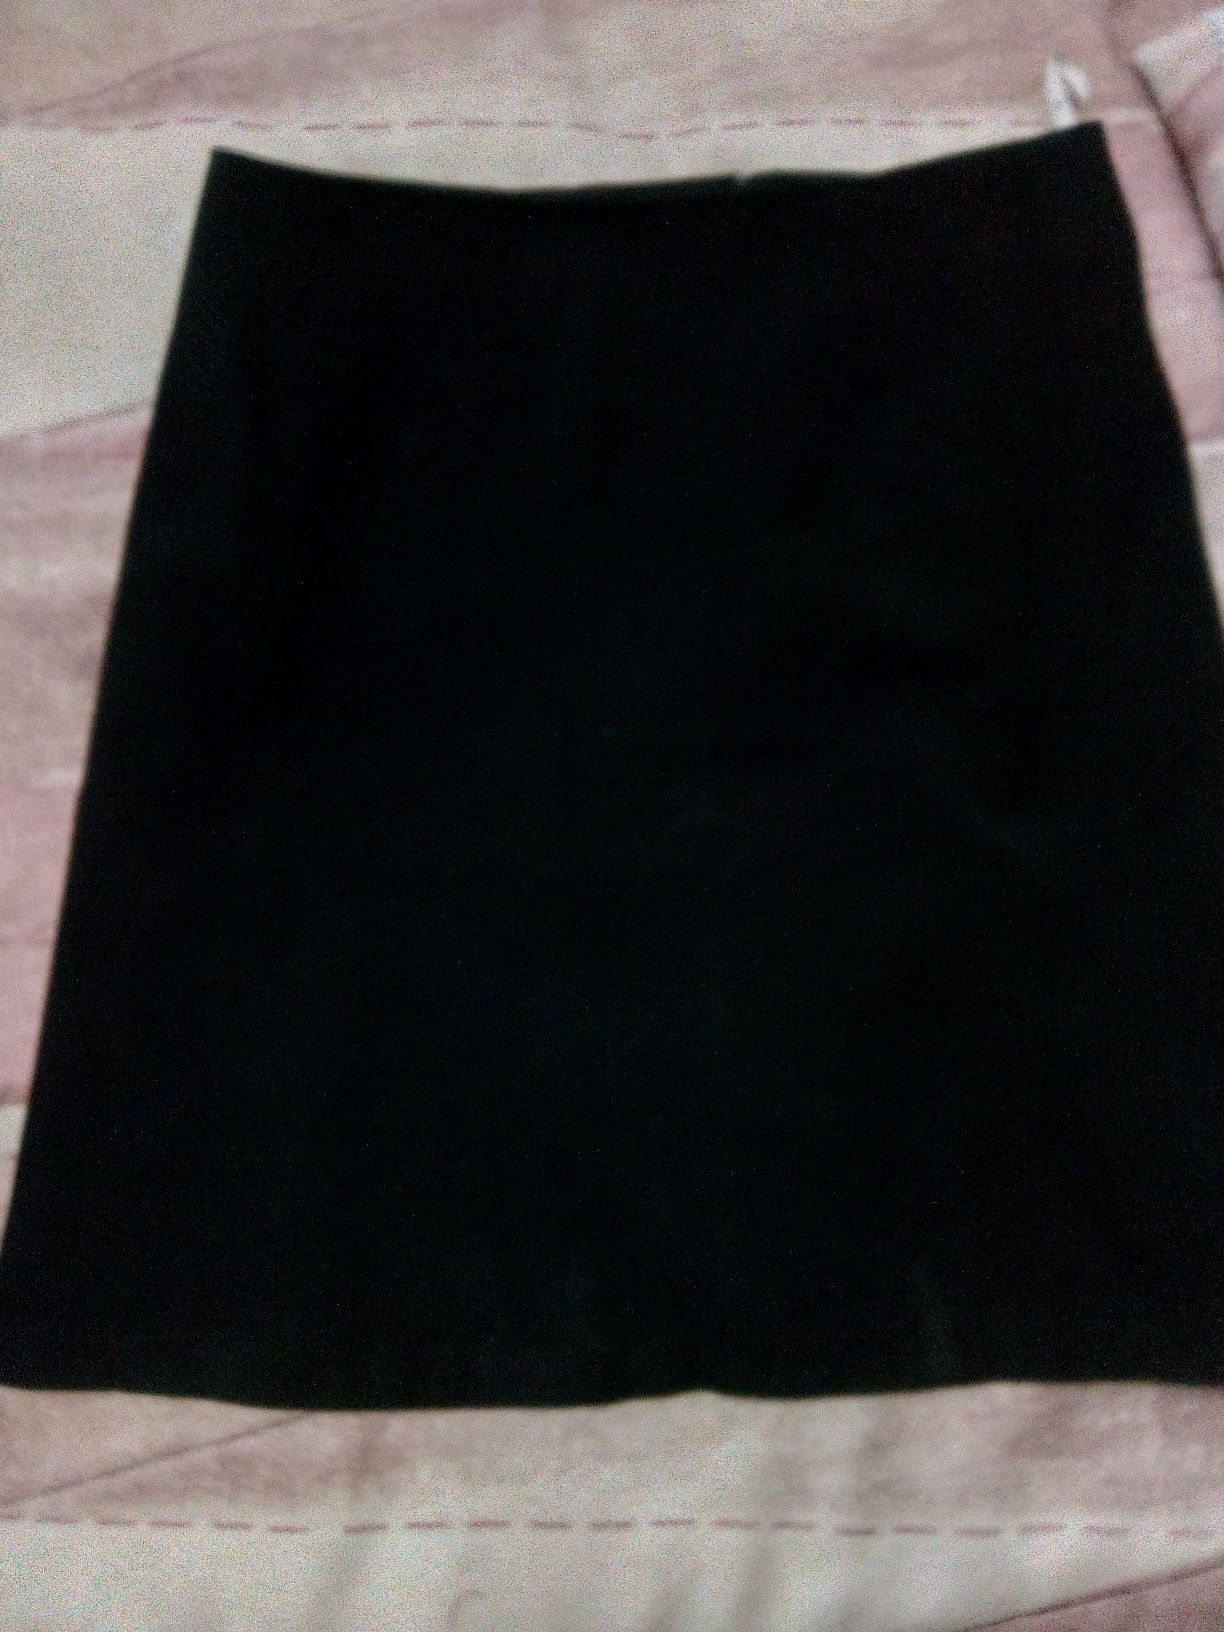 Продам костюм из мягкой ткани черного цвета